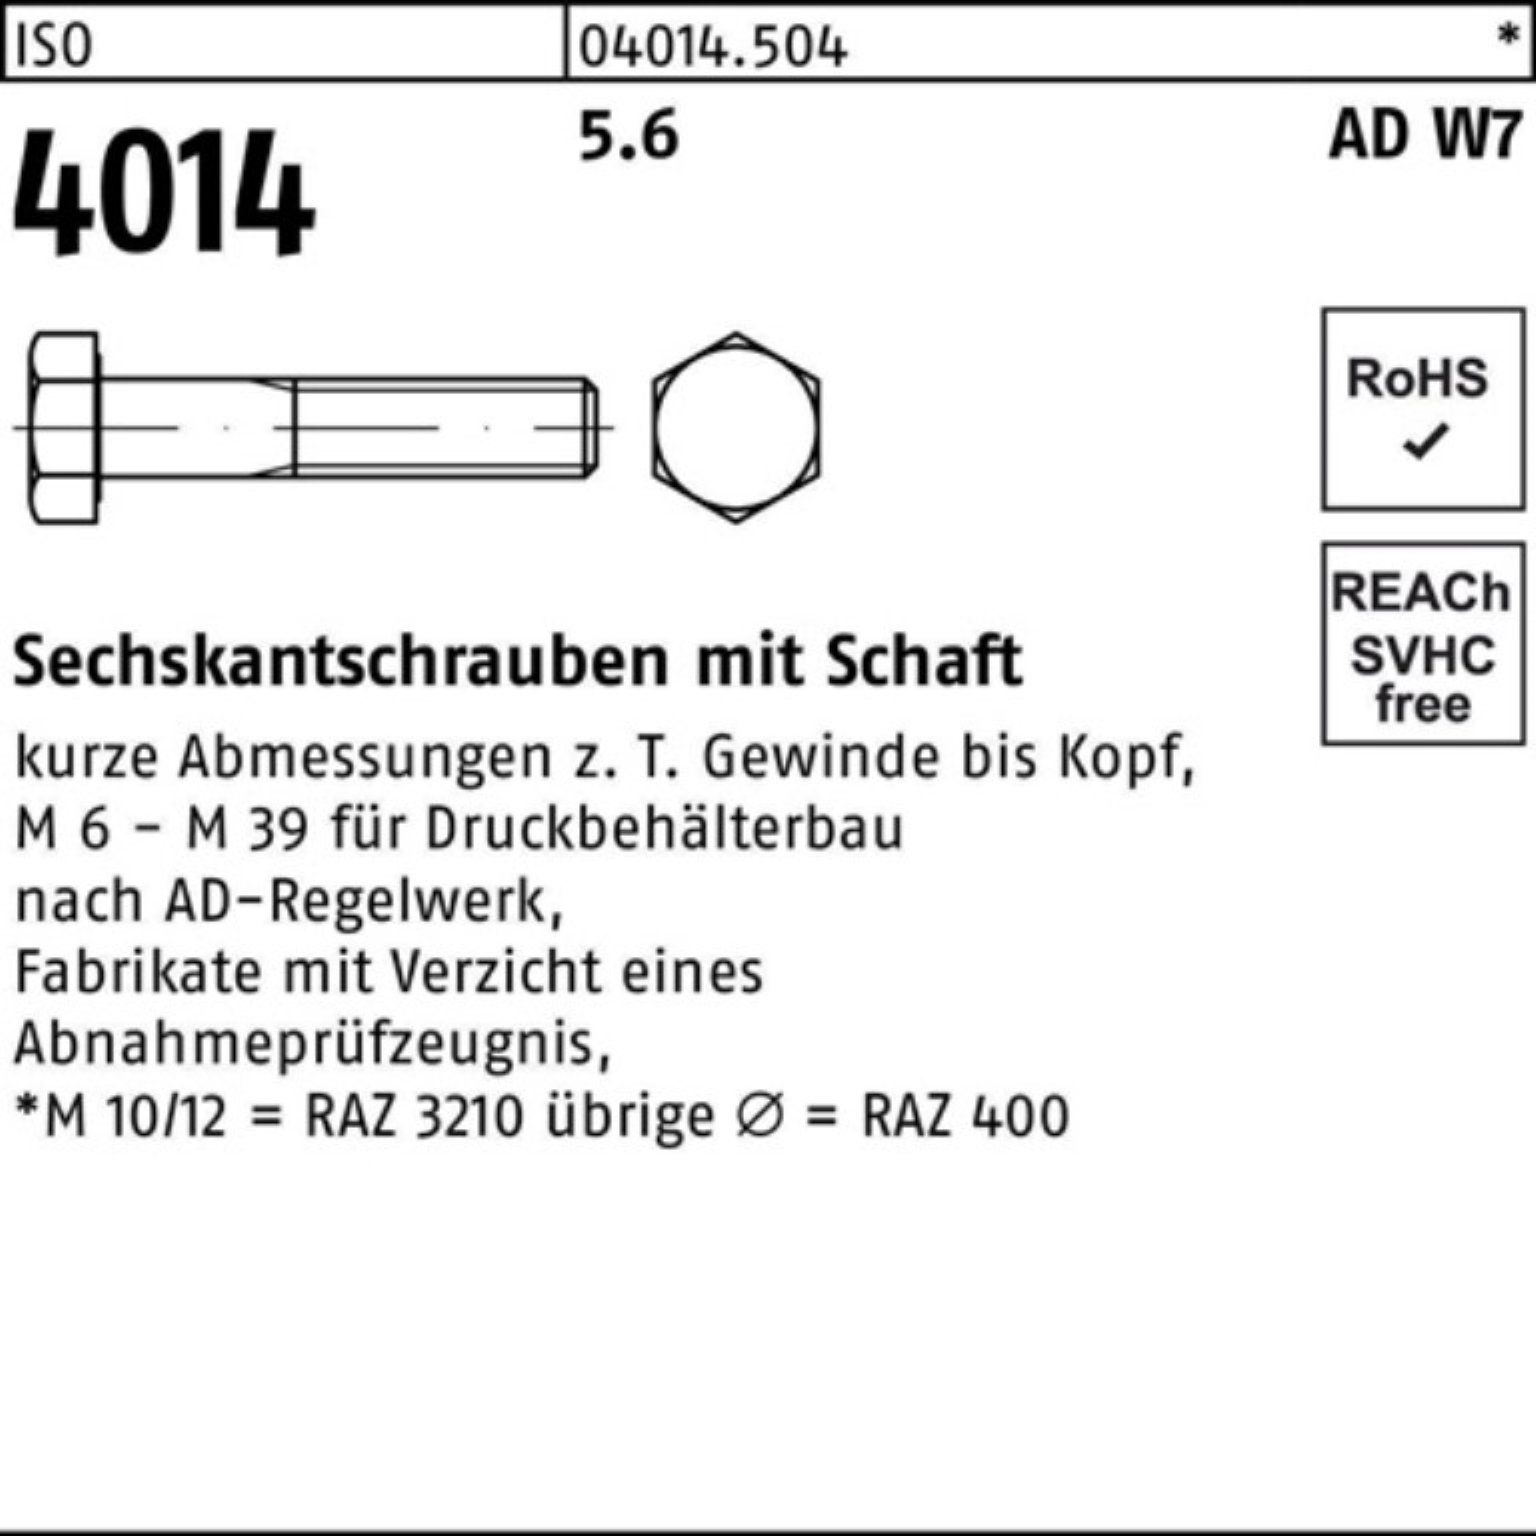 Sechskantschraube 5.6 Bufab Pack 4014 100er Sechskantschraube ISO 50 Stück W7 150 M12x Schaft